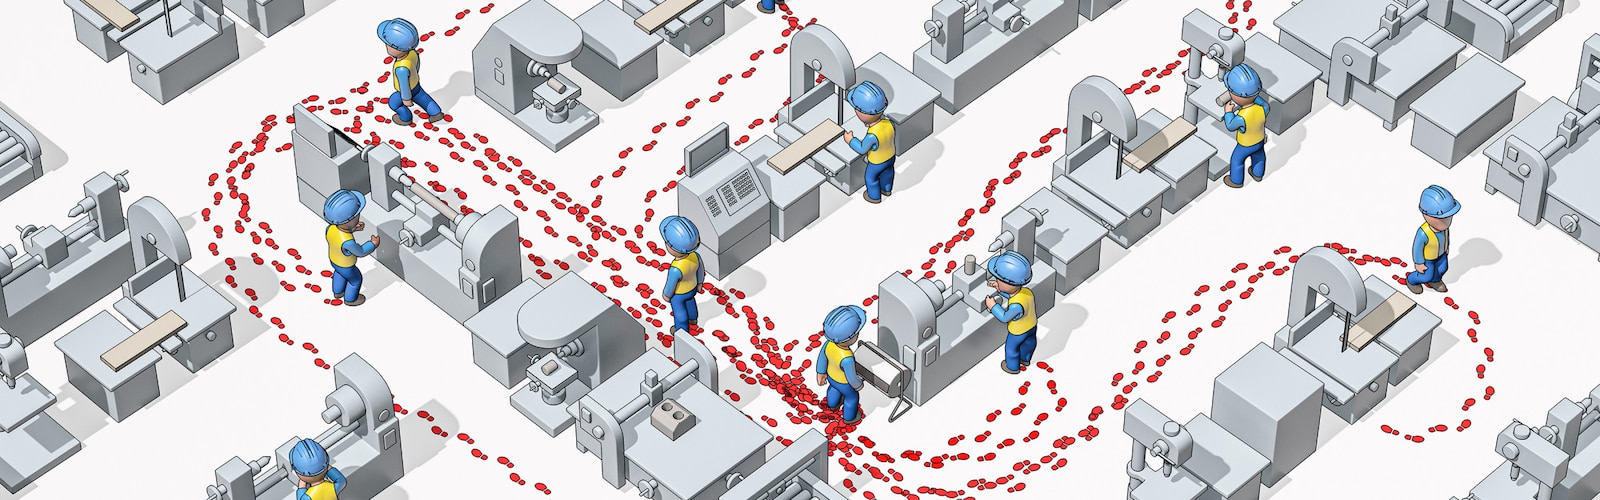 Ilustrovaný obrázok pracovníkov v priemysle v bezpečnostných helmách nasnímaný zhora v priemyselnom prostredí s ich zobrazenými stopami, ktoré naznačujú ich pohyb.